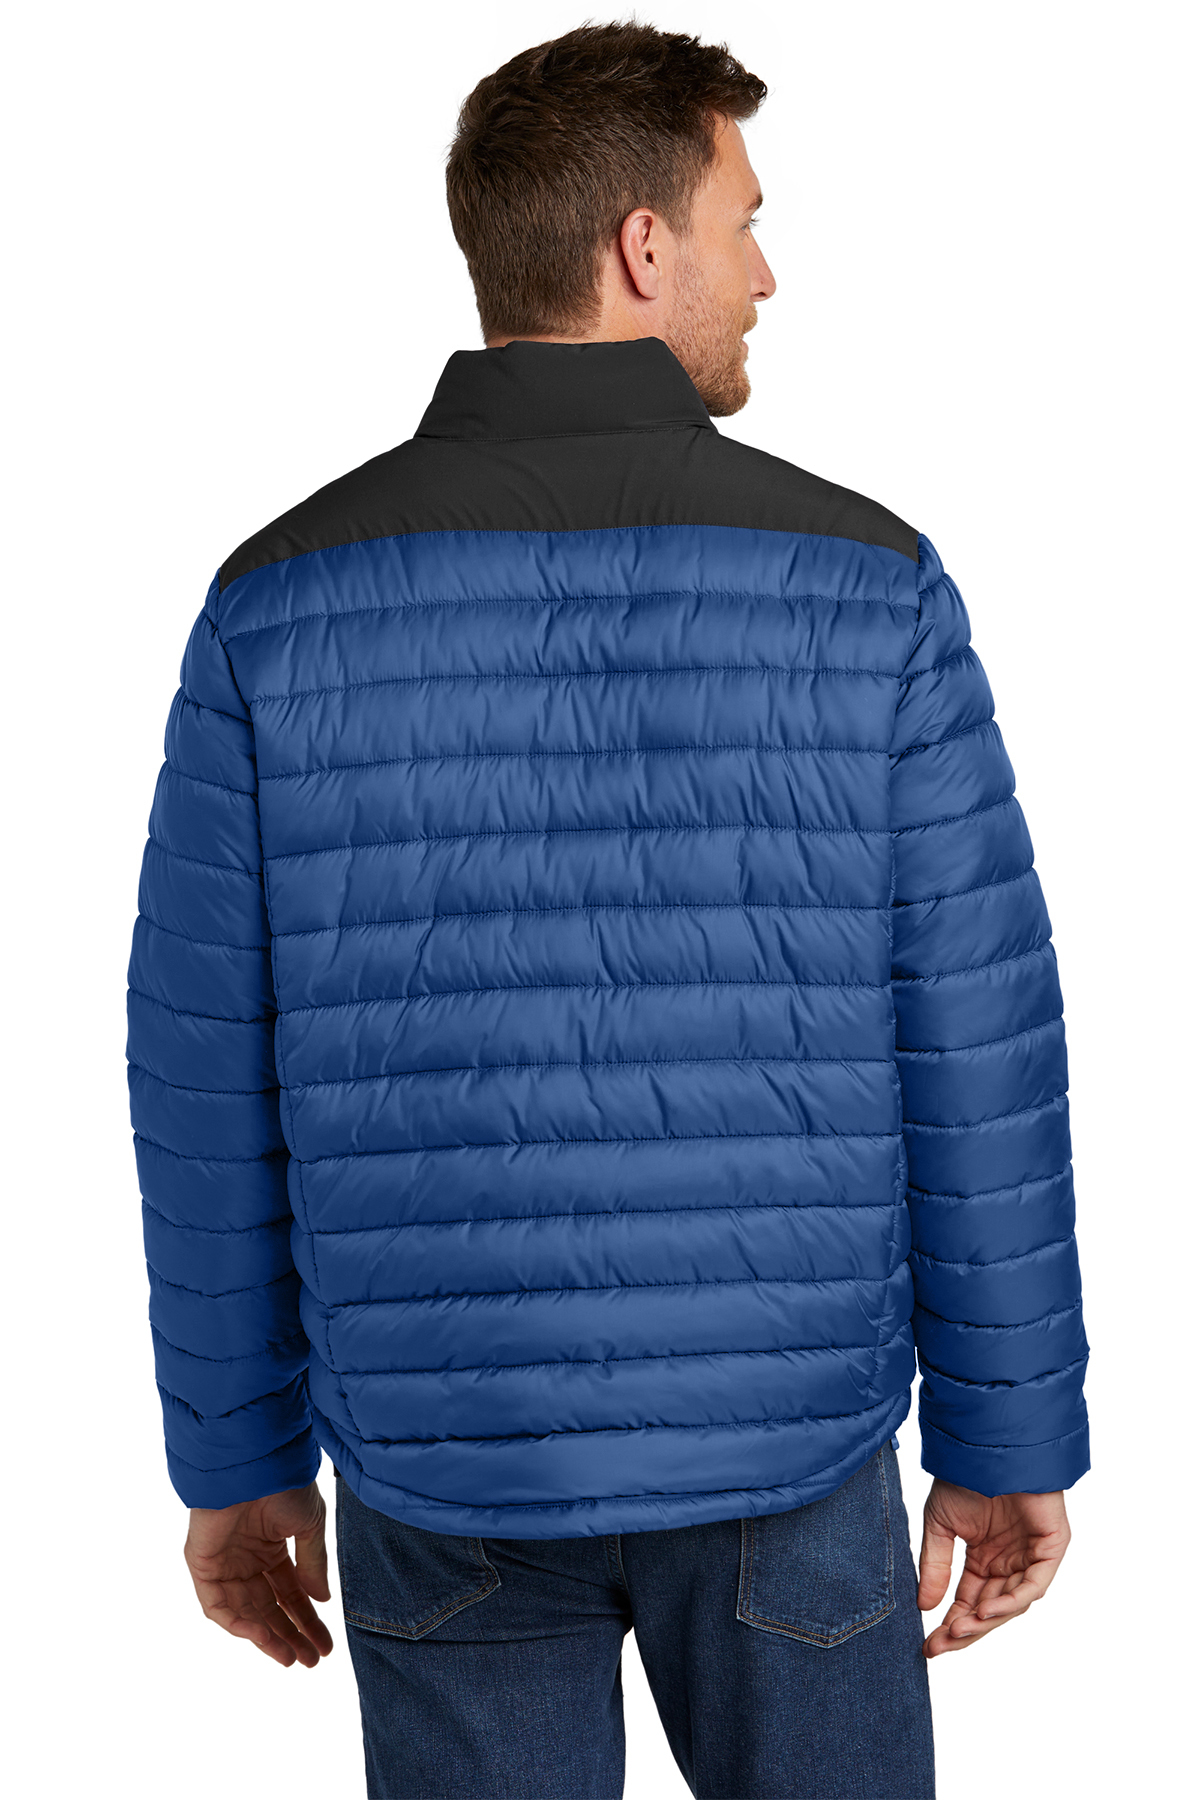 Port Authority Horizon Puffy Jacket | Product | Port Authority